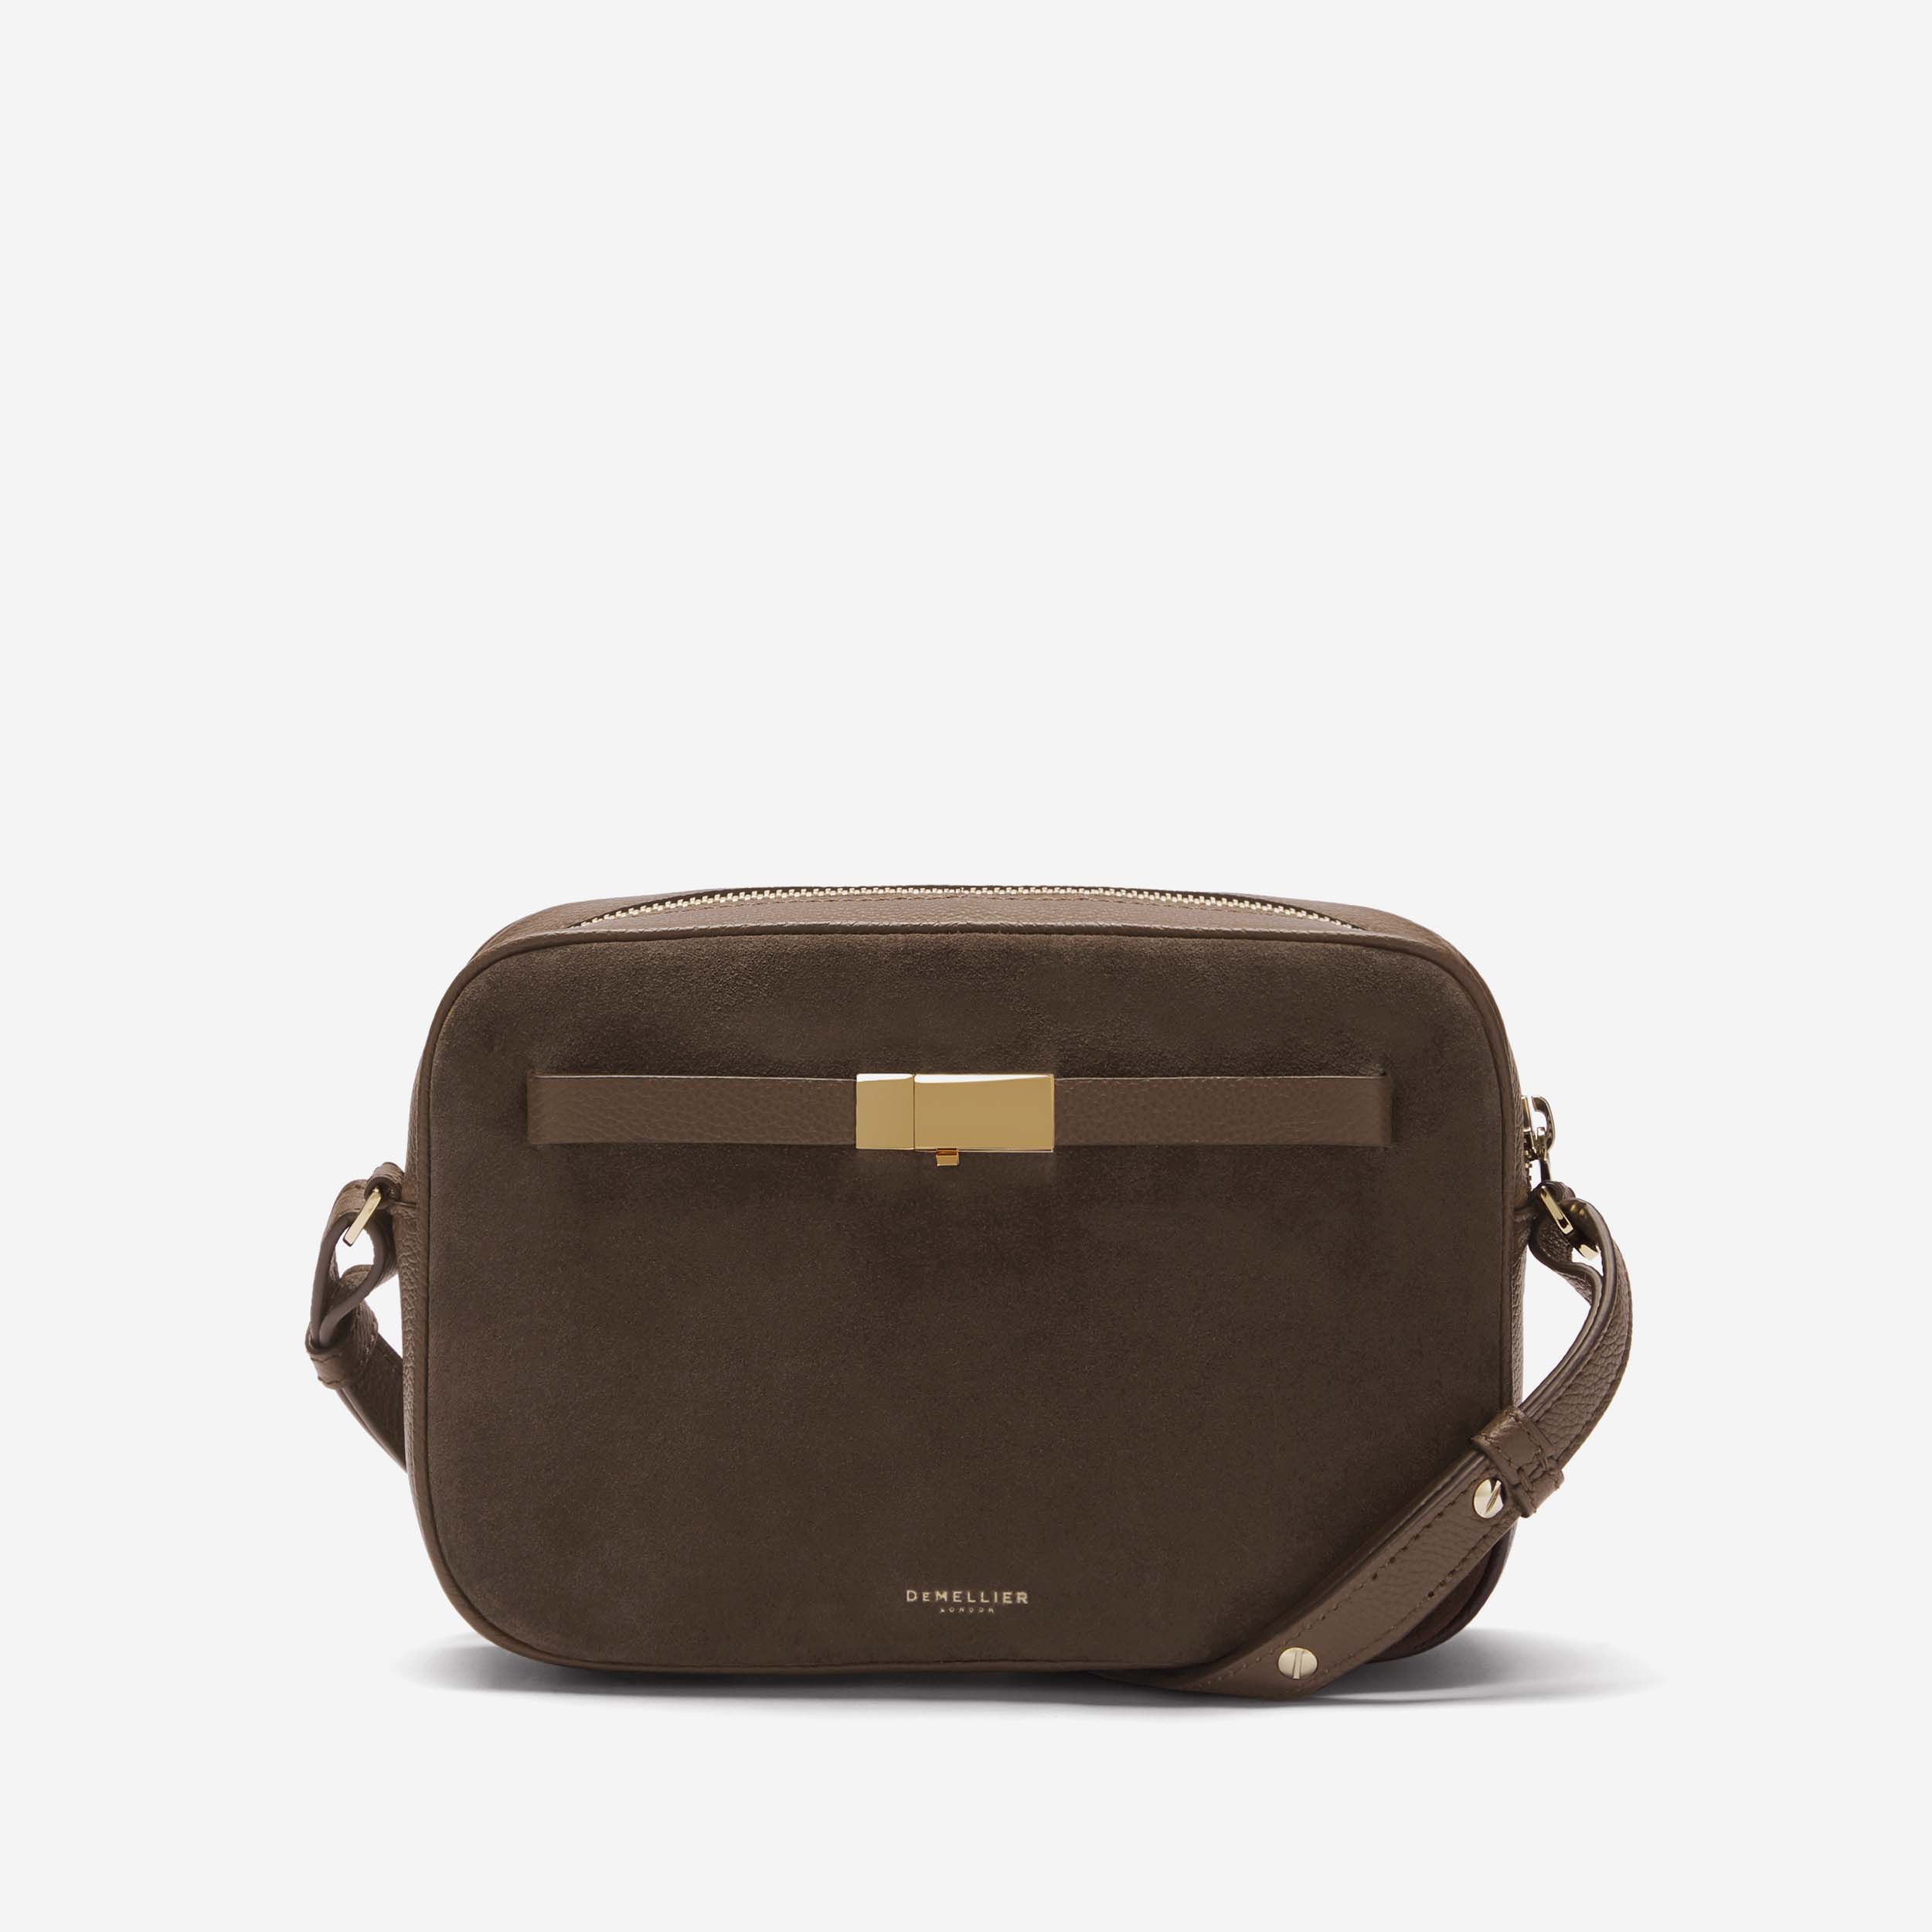 new handbags: suede, satchels & crossbody bags